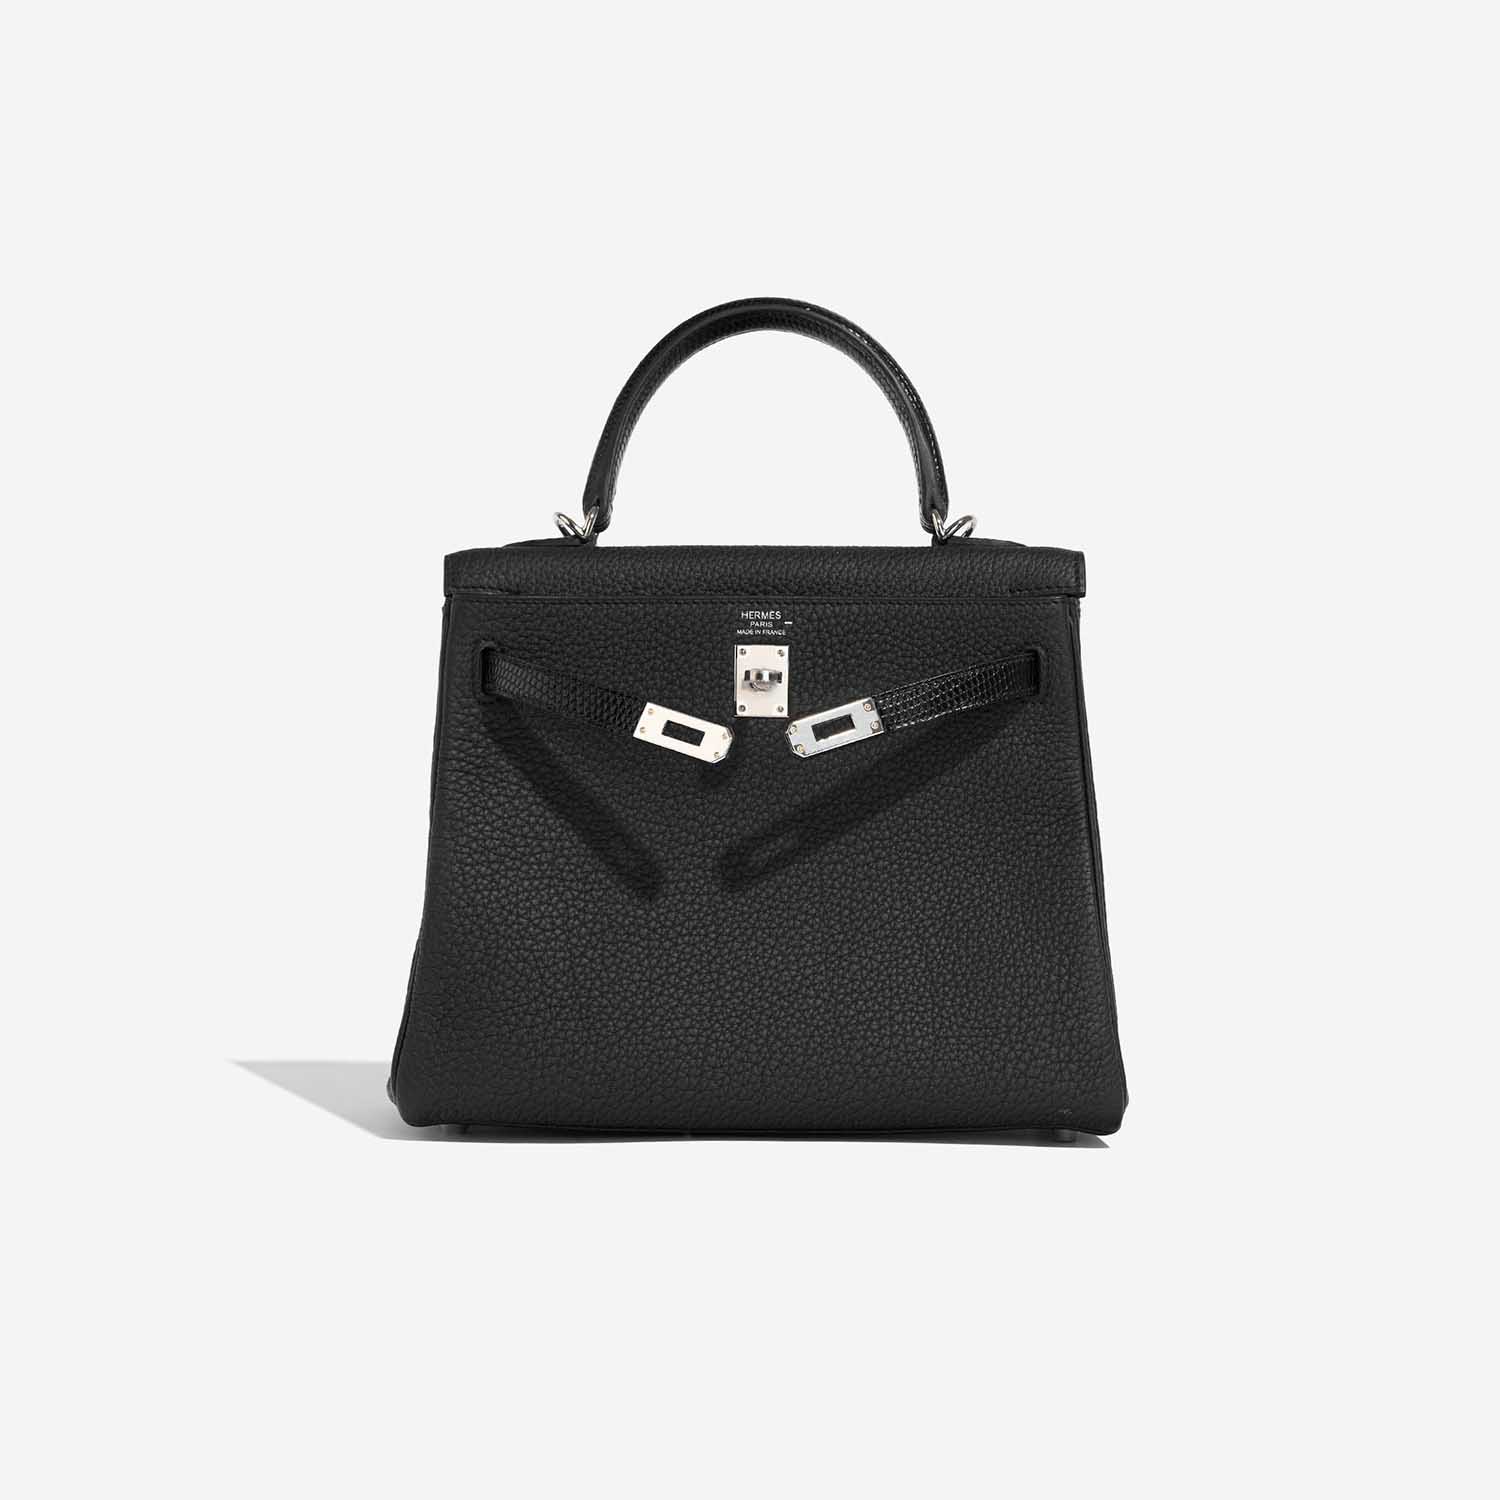 Hermès KellyTouch 25 Schwarz Front Open | Verkaufen Sie Ihre Designer-Tasche auf Saclab.com